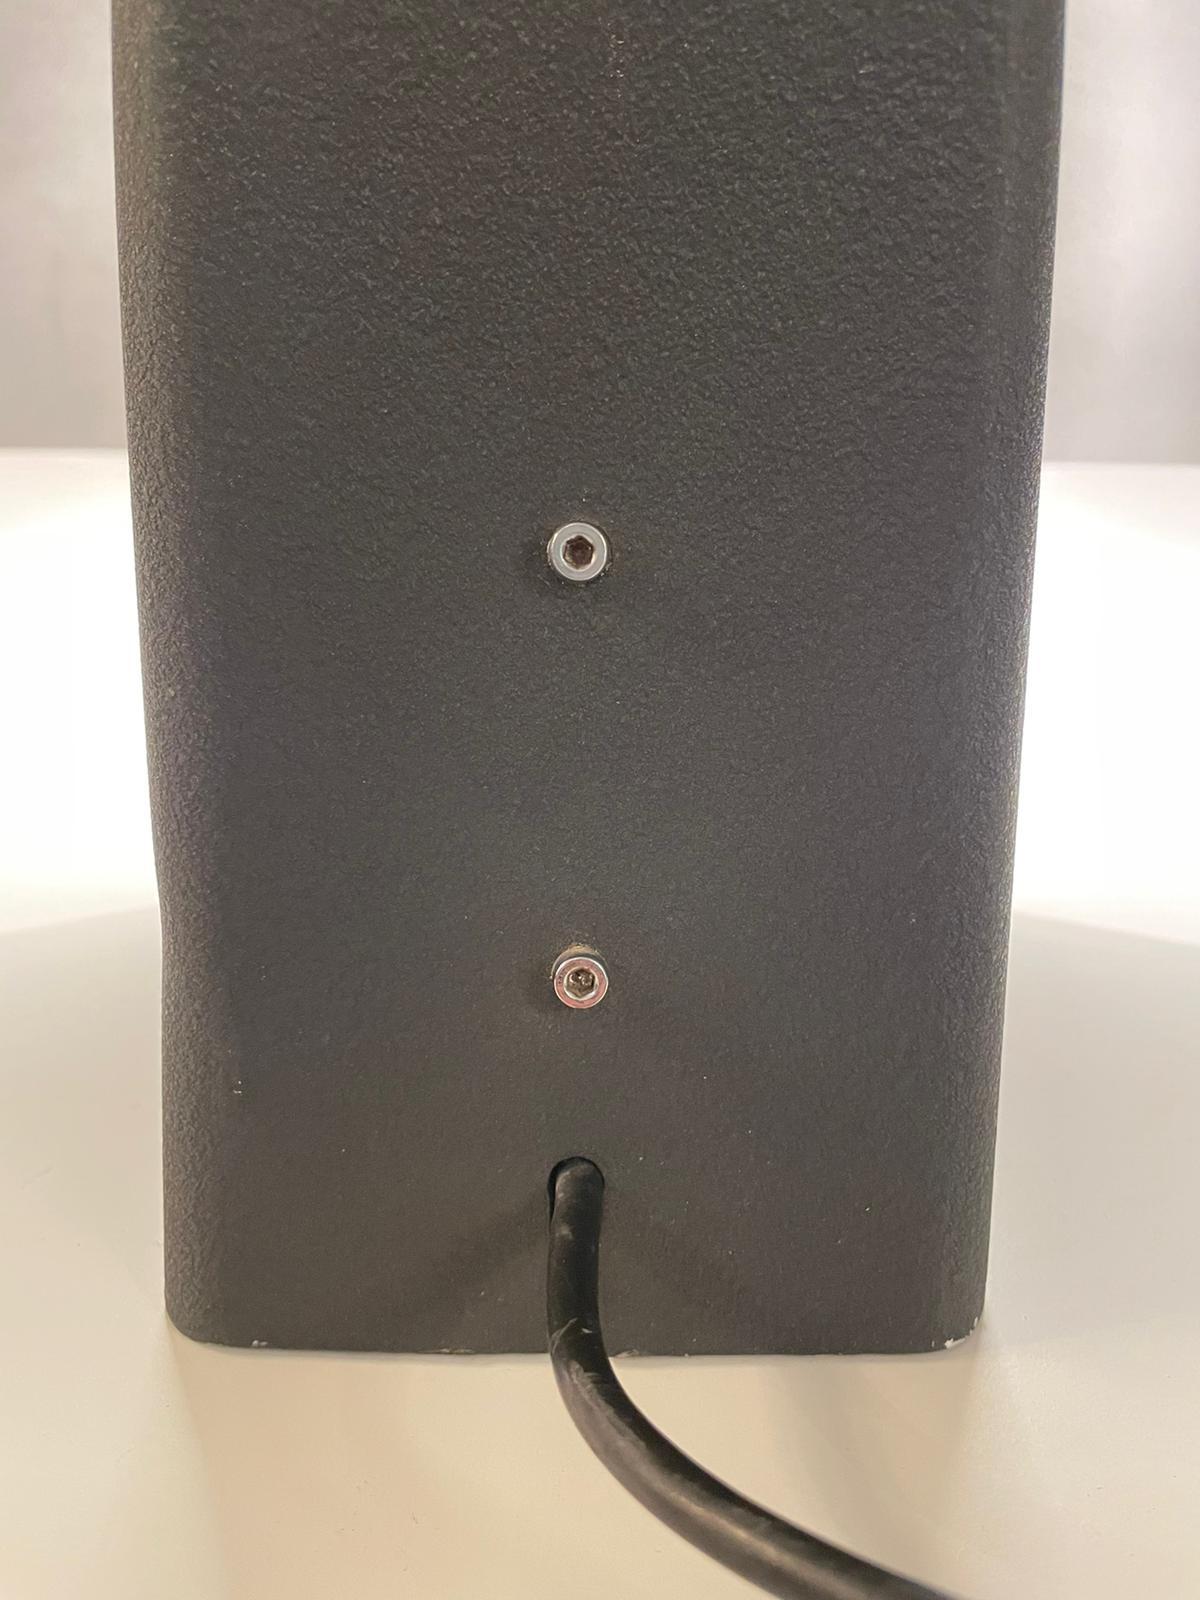 Aluminum Gino Sarfatti Arteluce Mod, 607 Black Aluminium Table Lamp, Italy, 1971